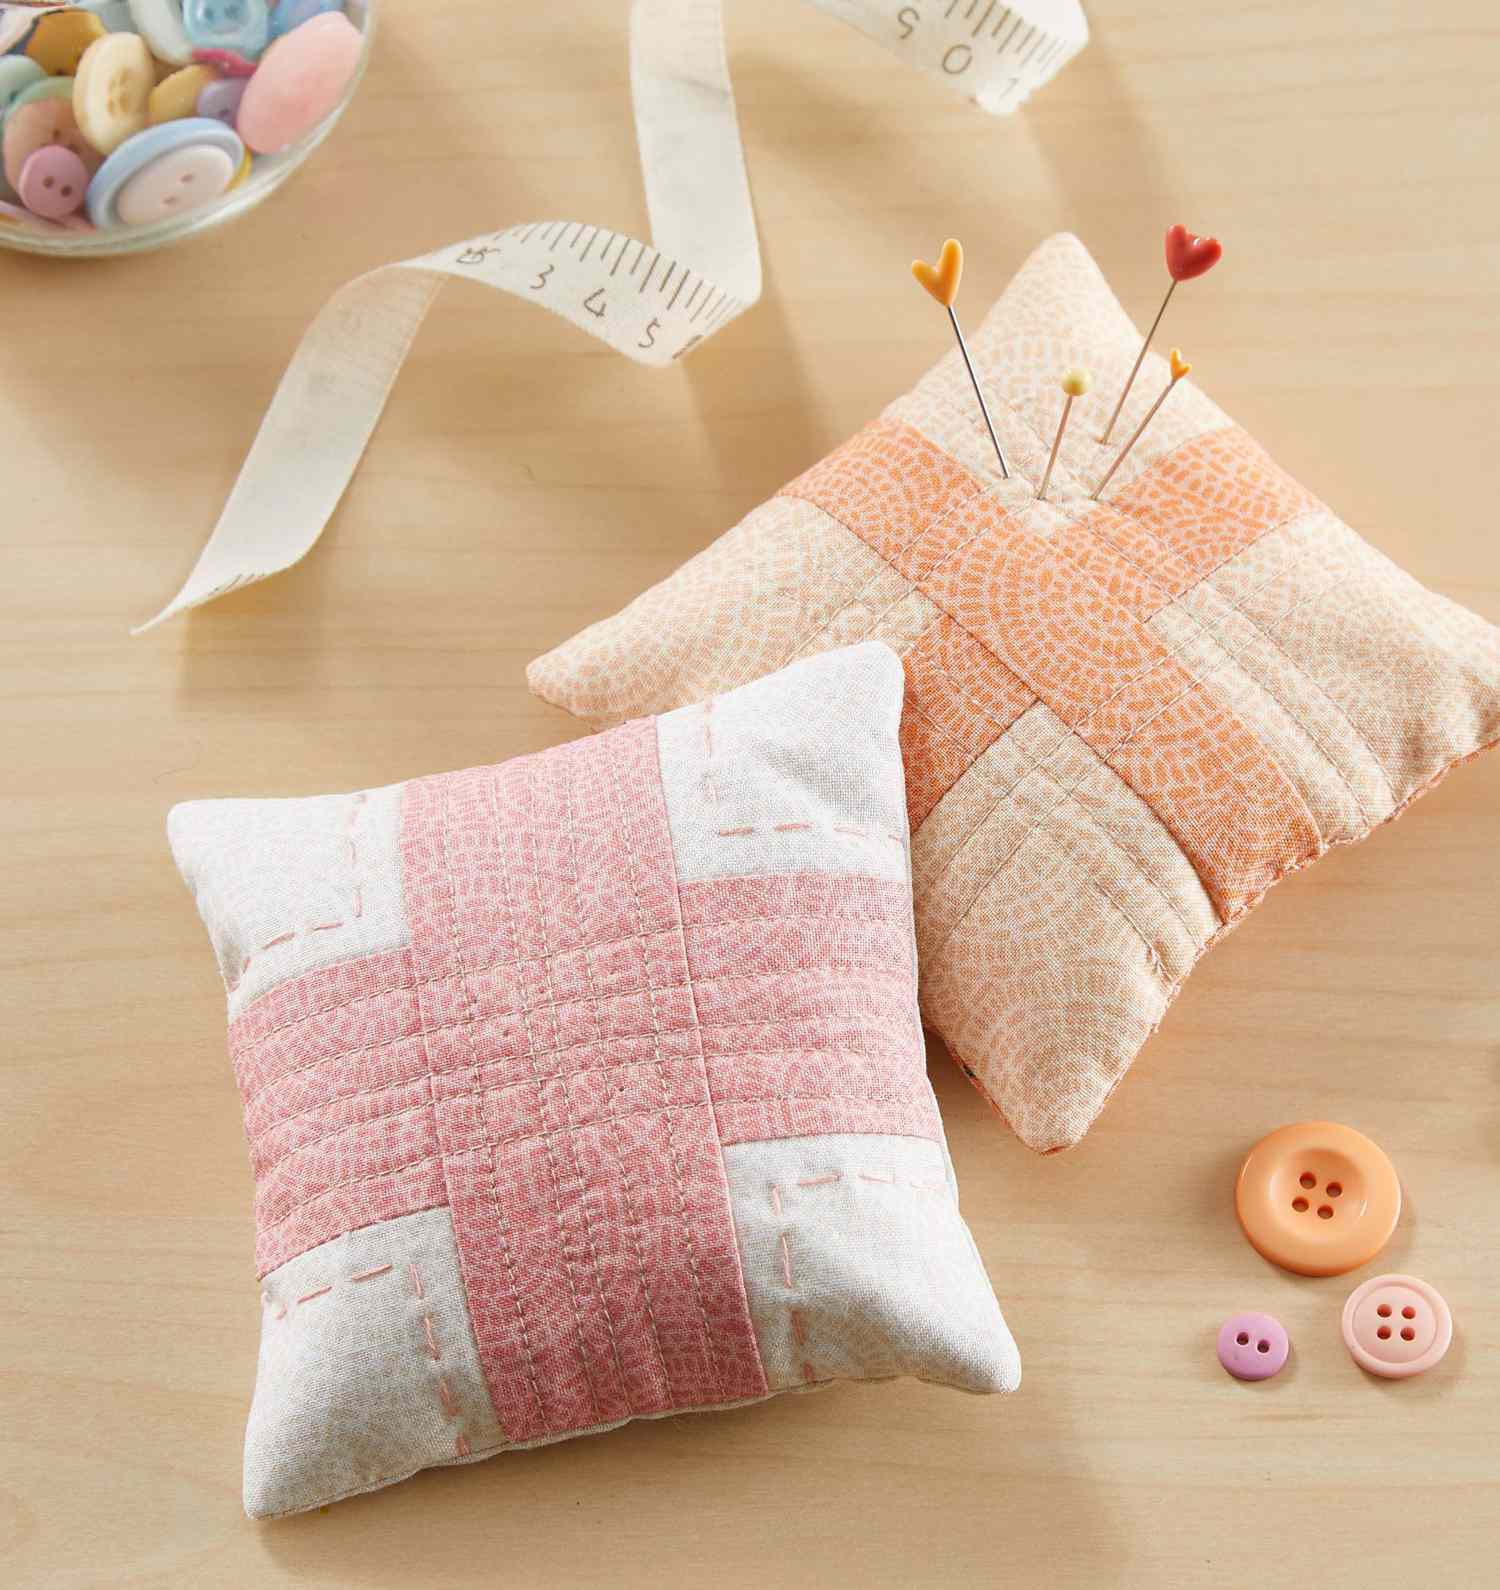 Handmade Pincushion Felted Wool White & Tan Floral Mini Cushion